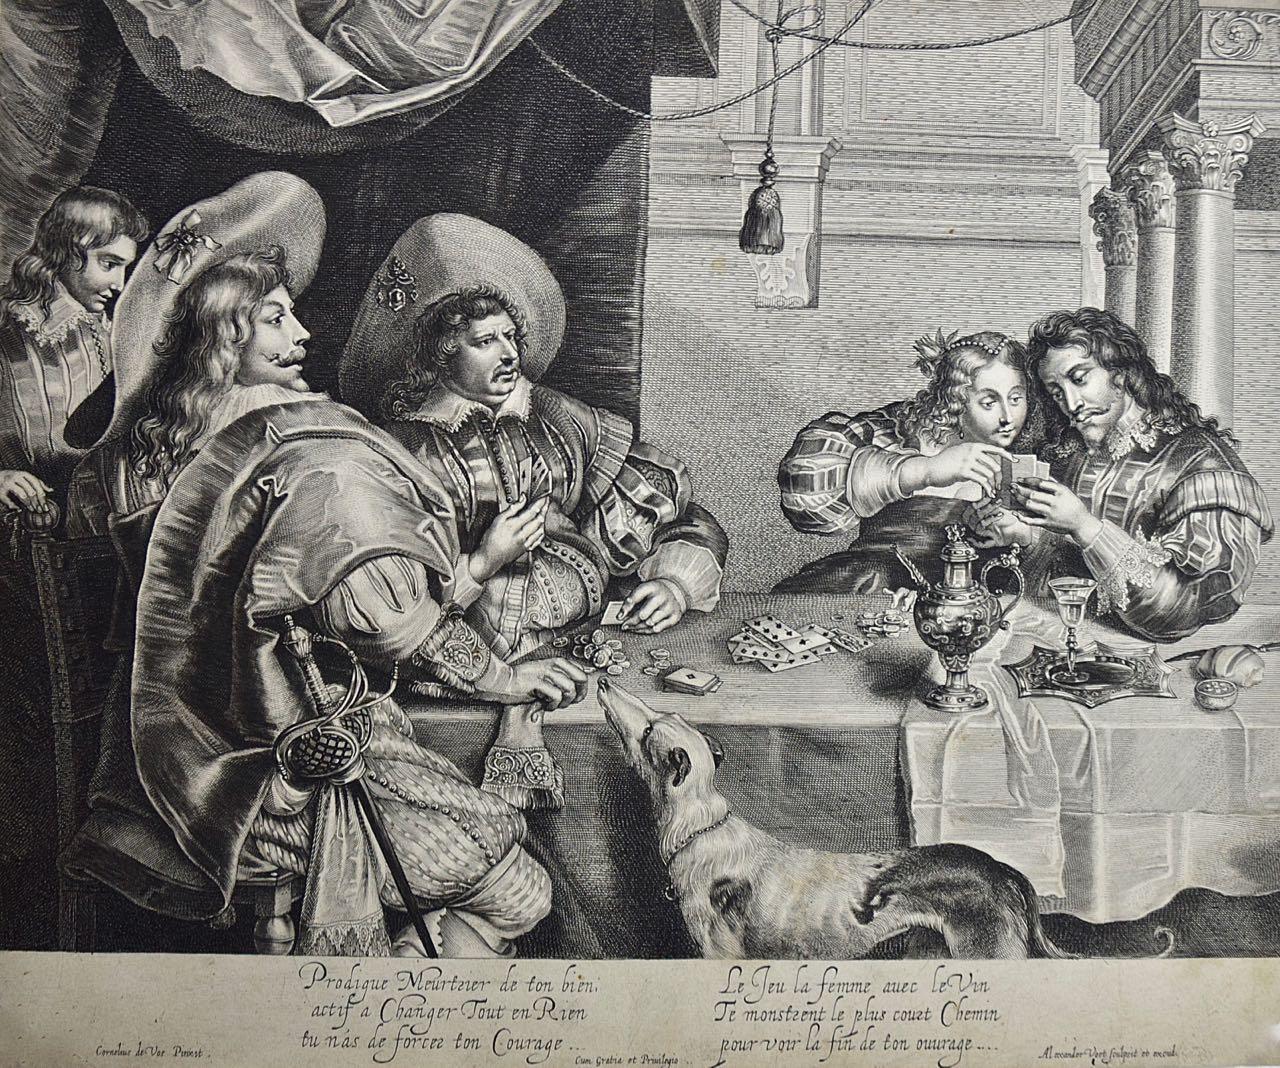  Le jeu de cartes : une gravure du début du 17e siècle de A. Voet d'après Cornelis de Vos